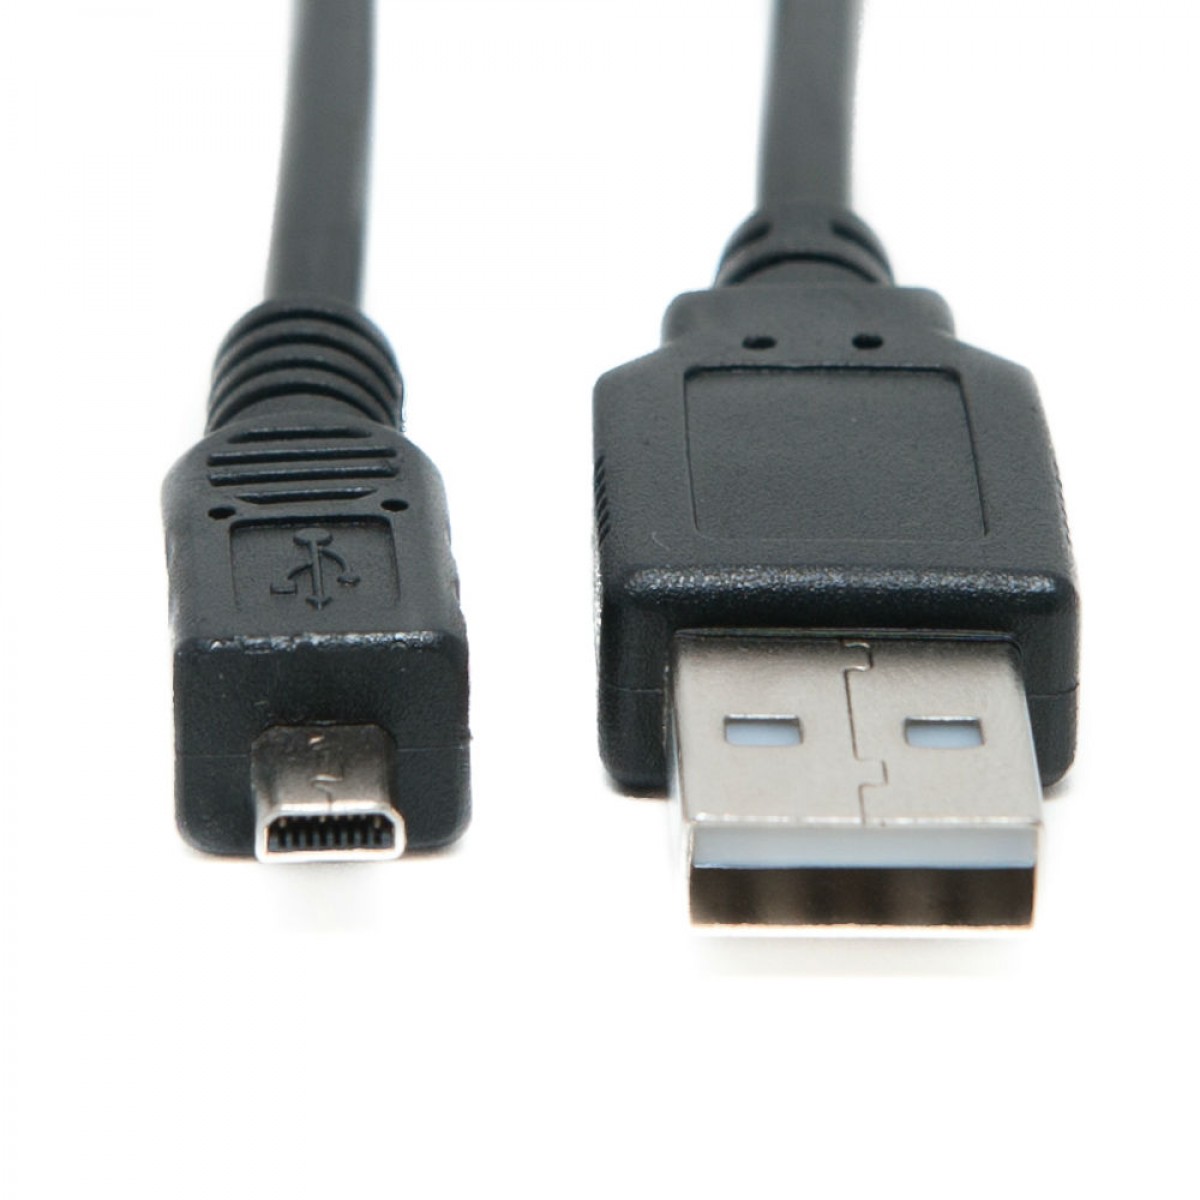 Panasonic Lumix DMC-LX7 USB Cable UC-E6 USB 